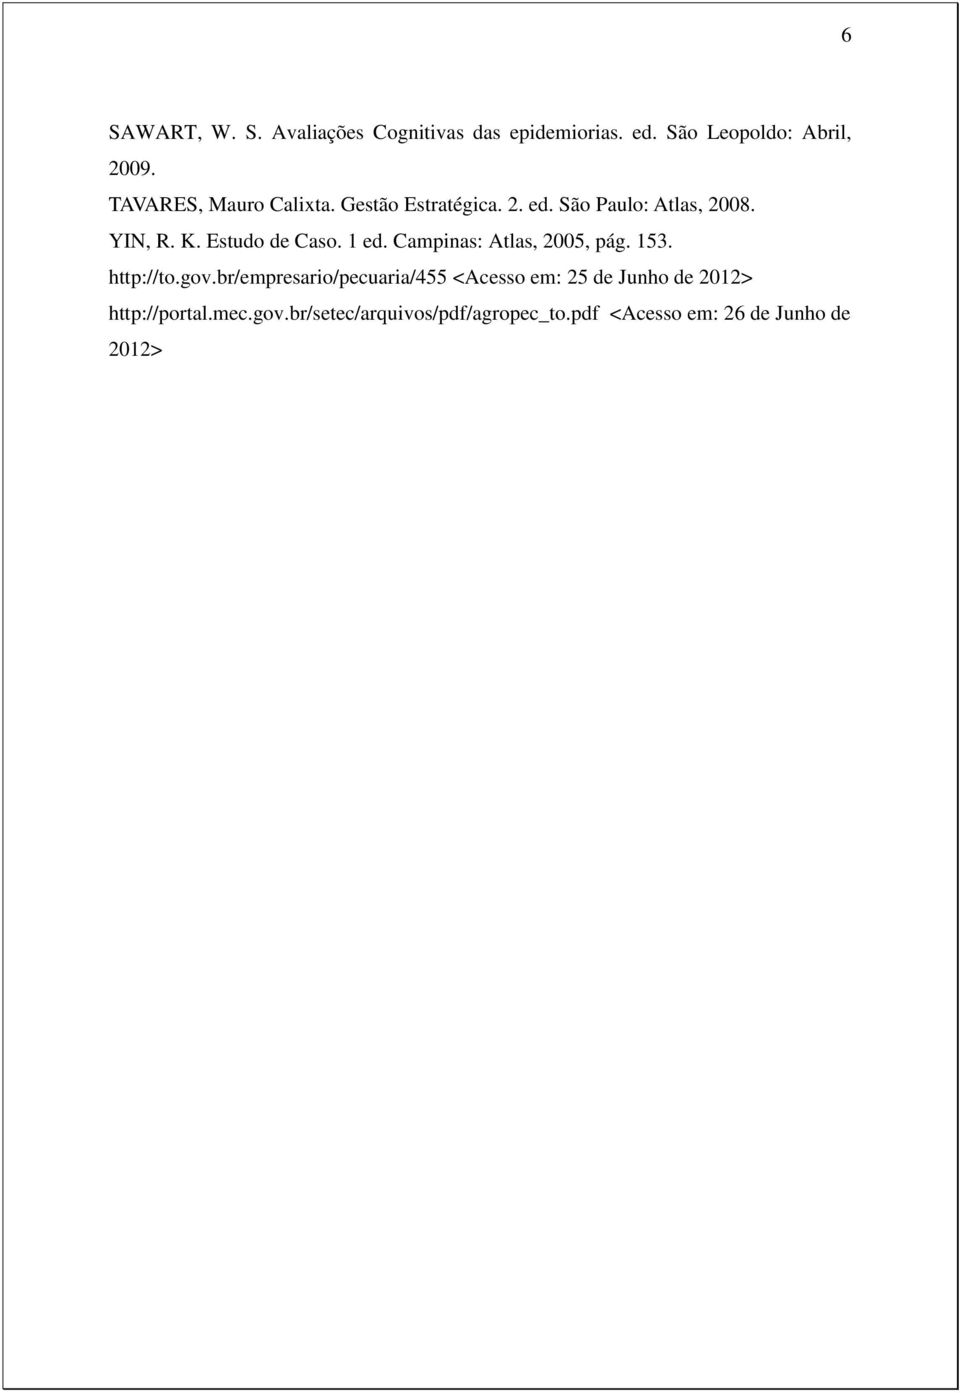 Estudo de Caso. 1 ed. Campinas: Atlas, 2005, pág. 153. http://to.gov.